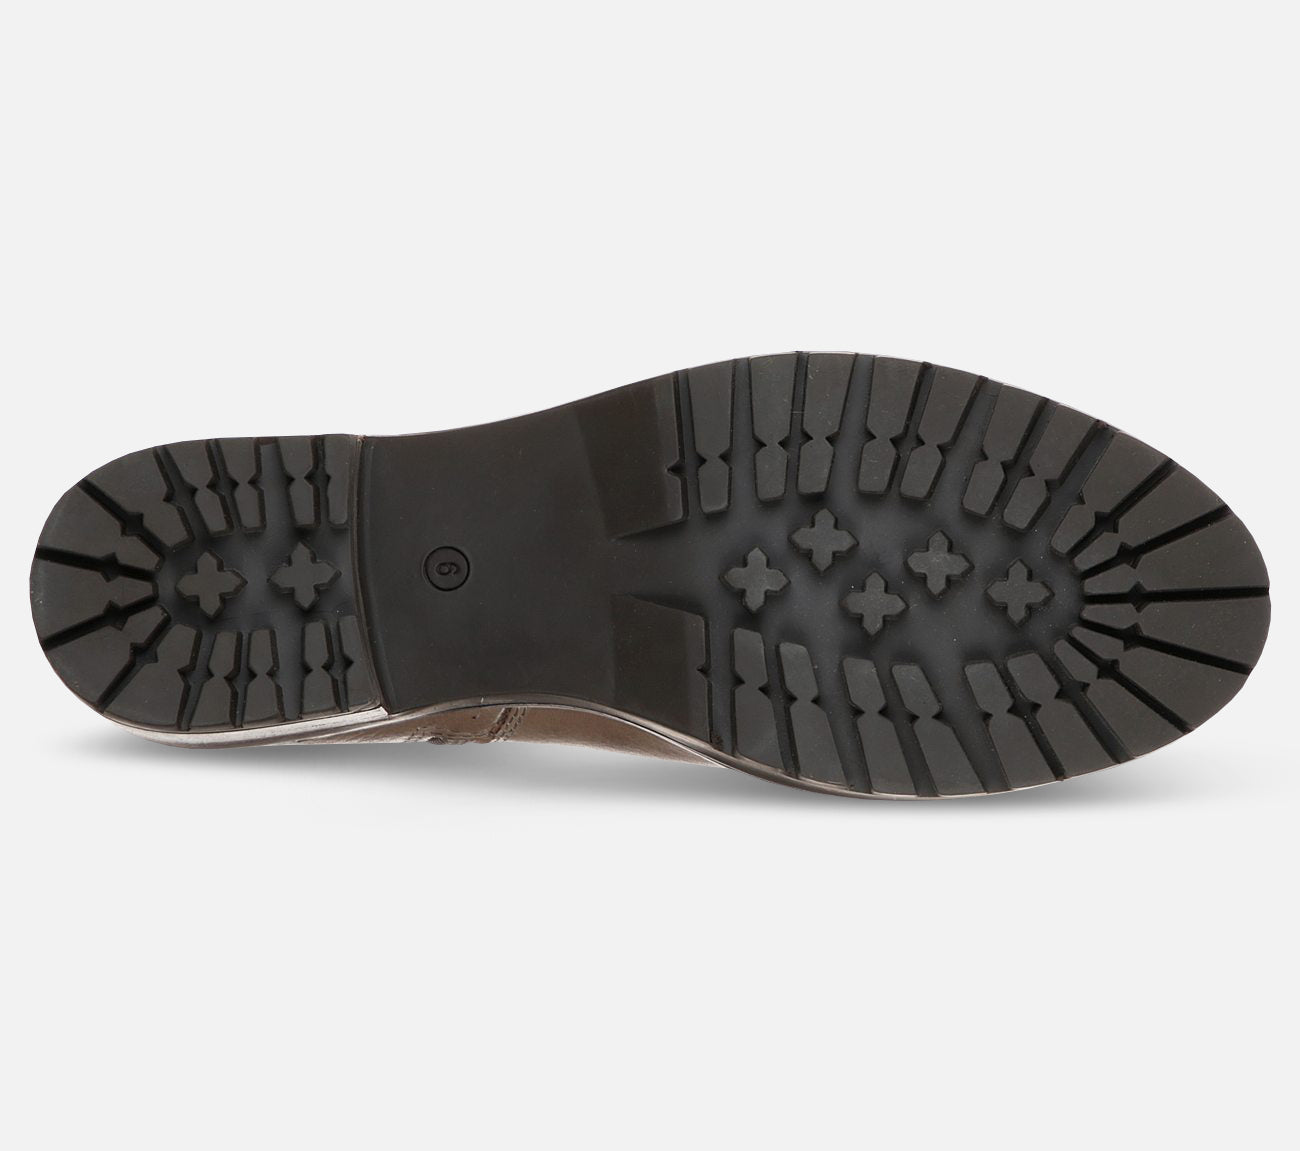 Lugnut - New Fav Boot Skechers